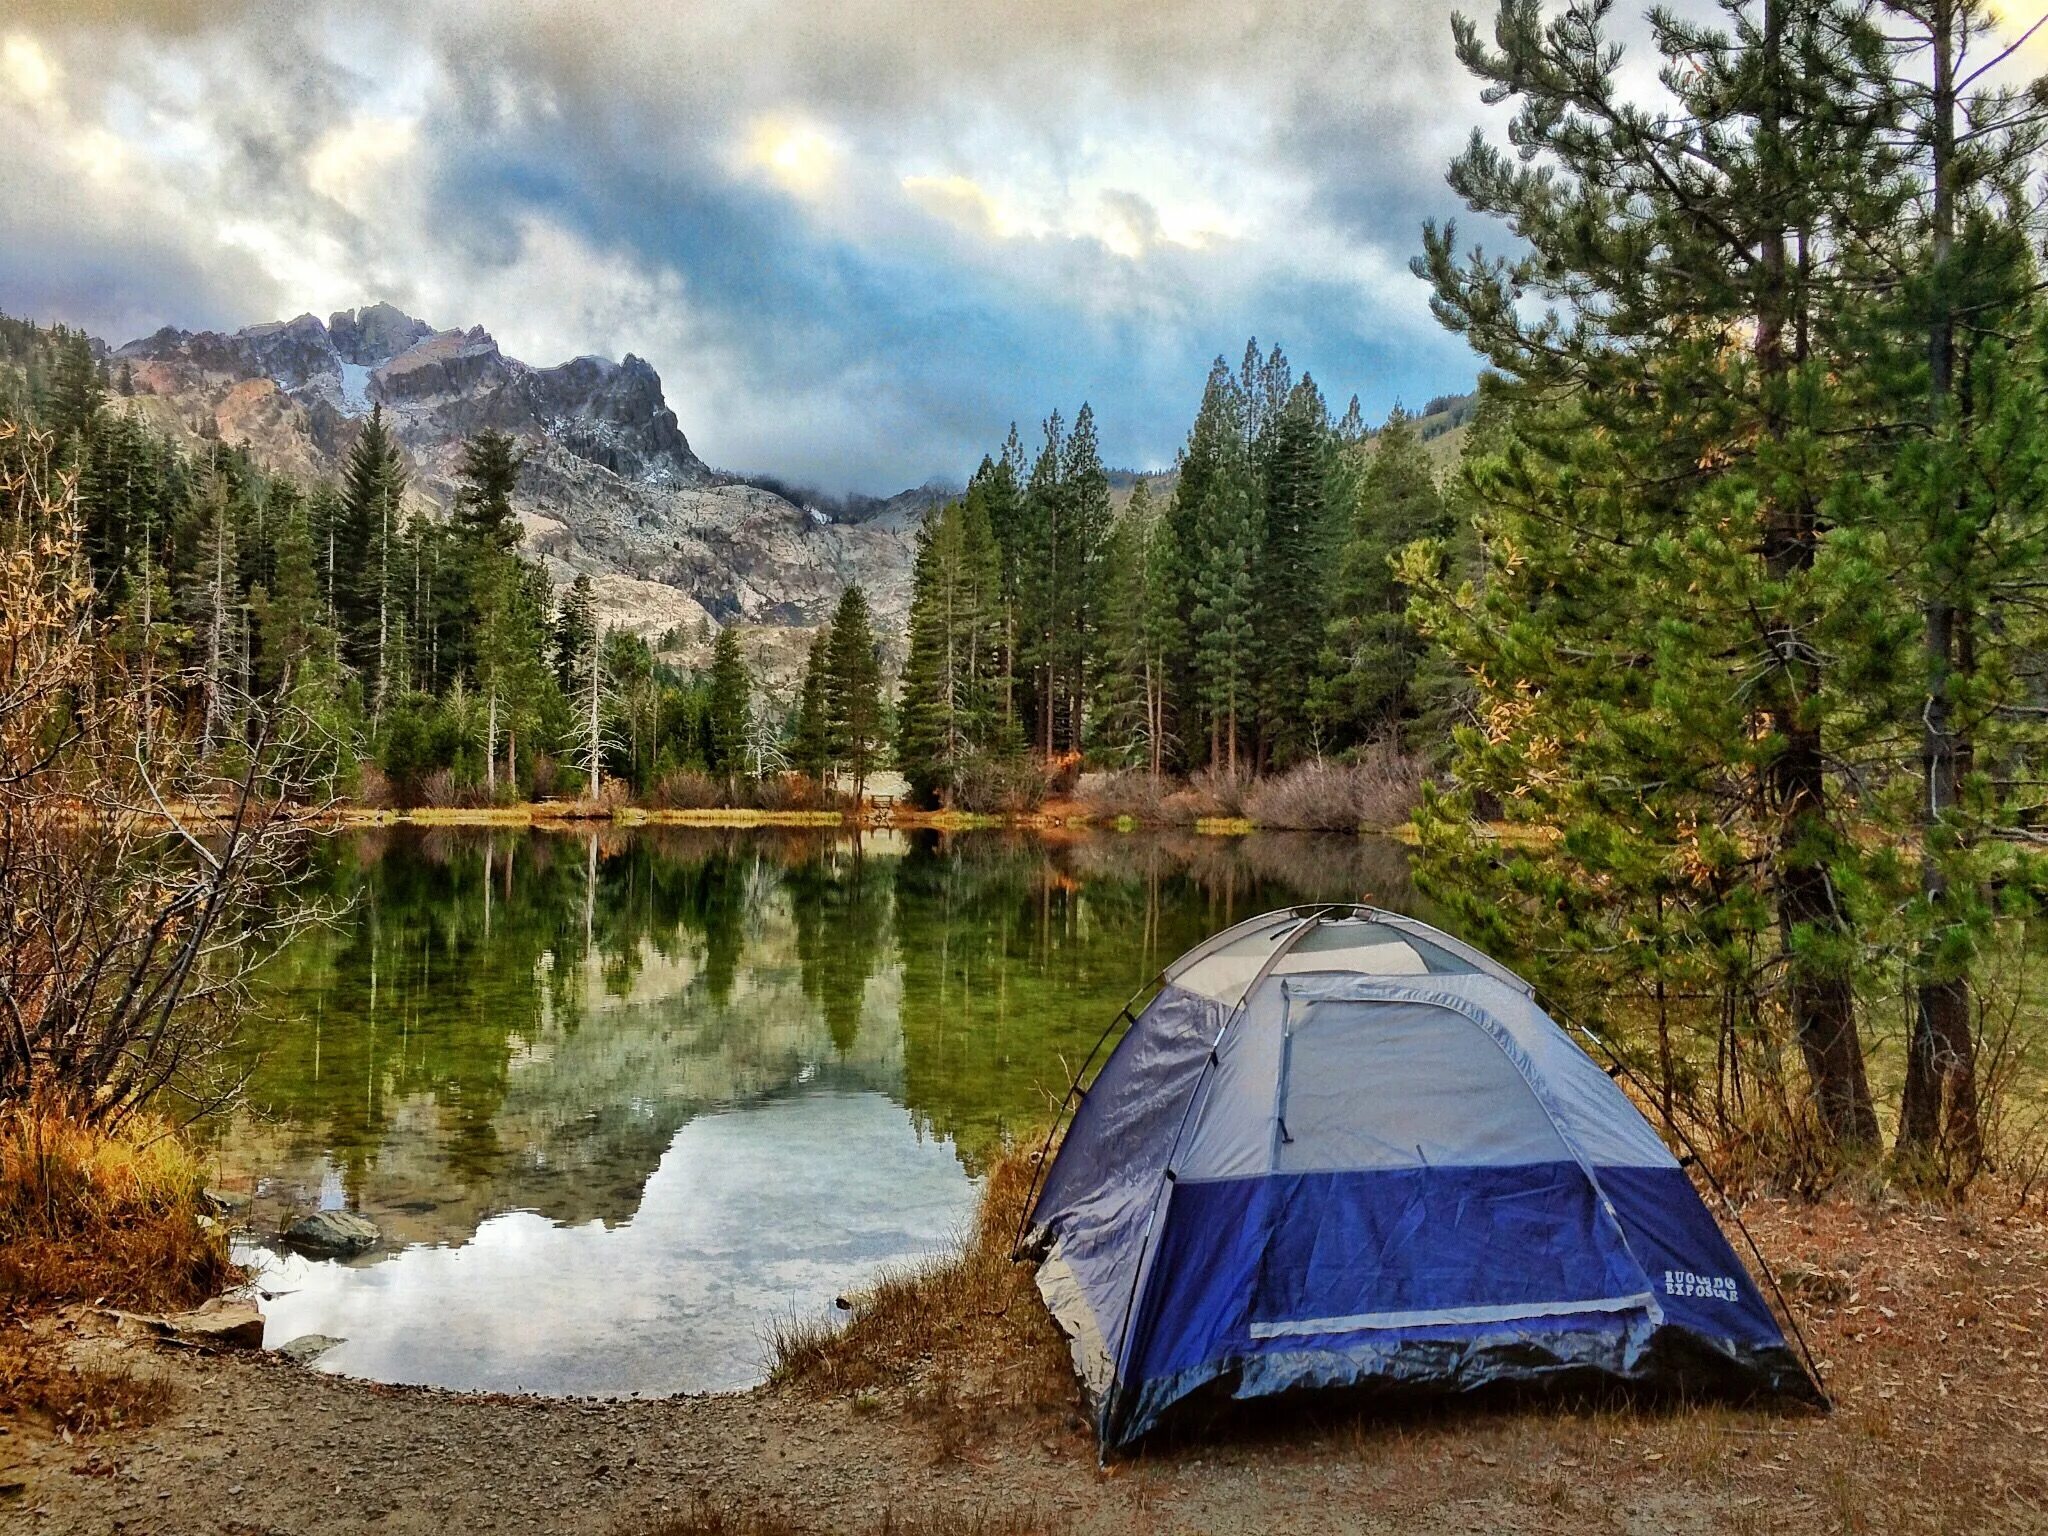 Camping pictures. Кемпинг серебряное озеро. Outdoor кемпинг. Национальный парк Калифорнии кемпинг. Серебряное озеро кемпинг серебряное.